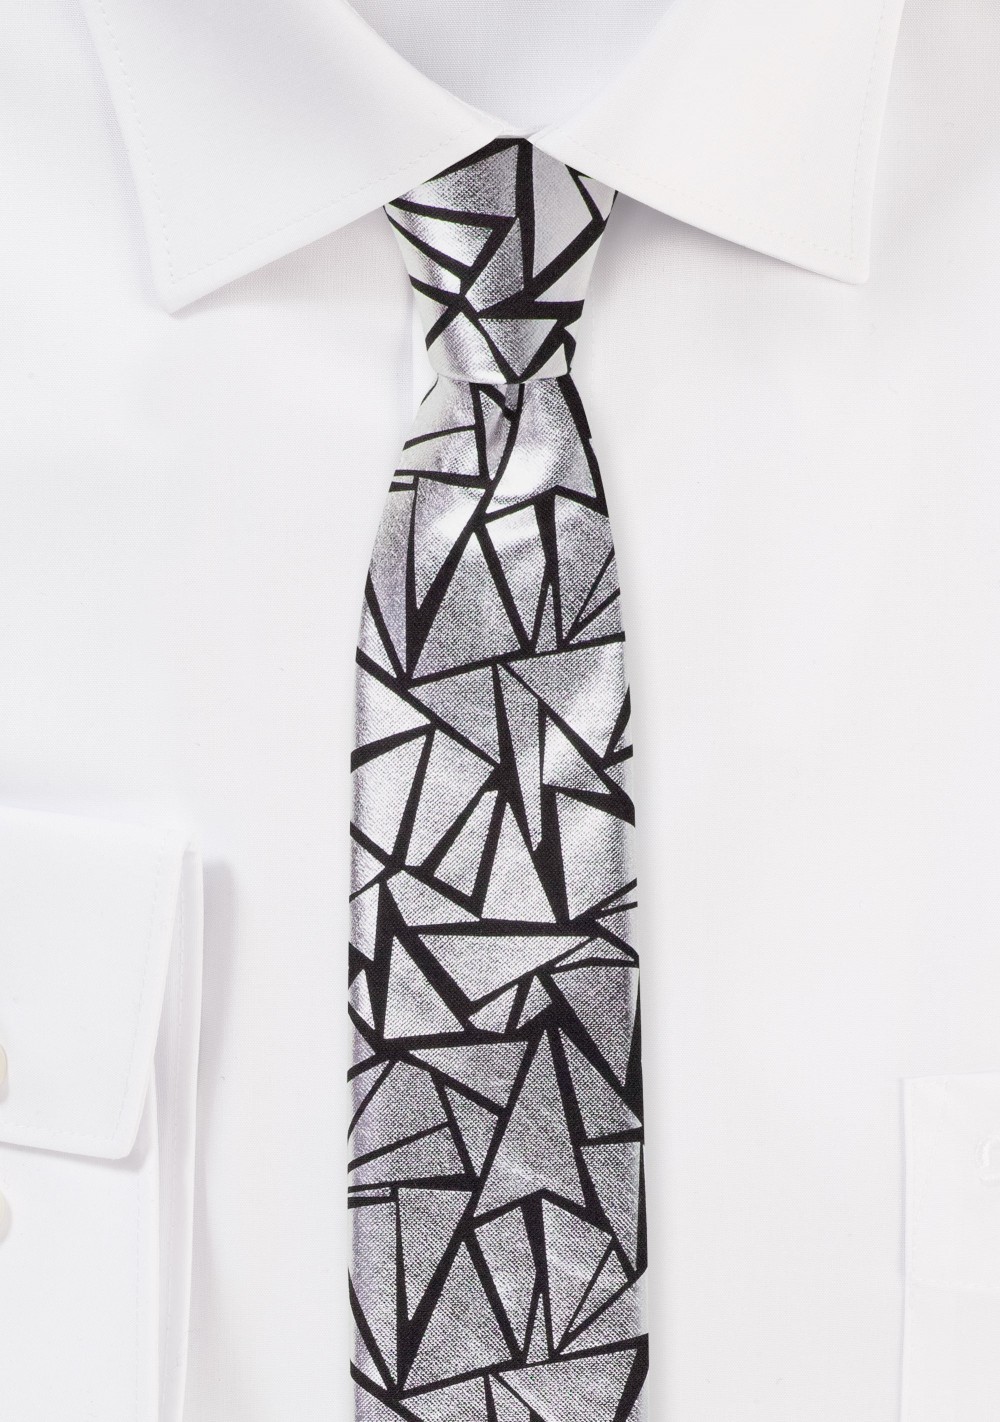 Geo Print Skinny Tie in Black and Metallic Silver